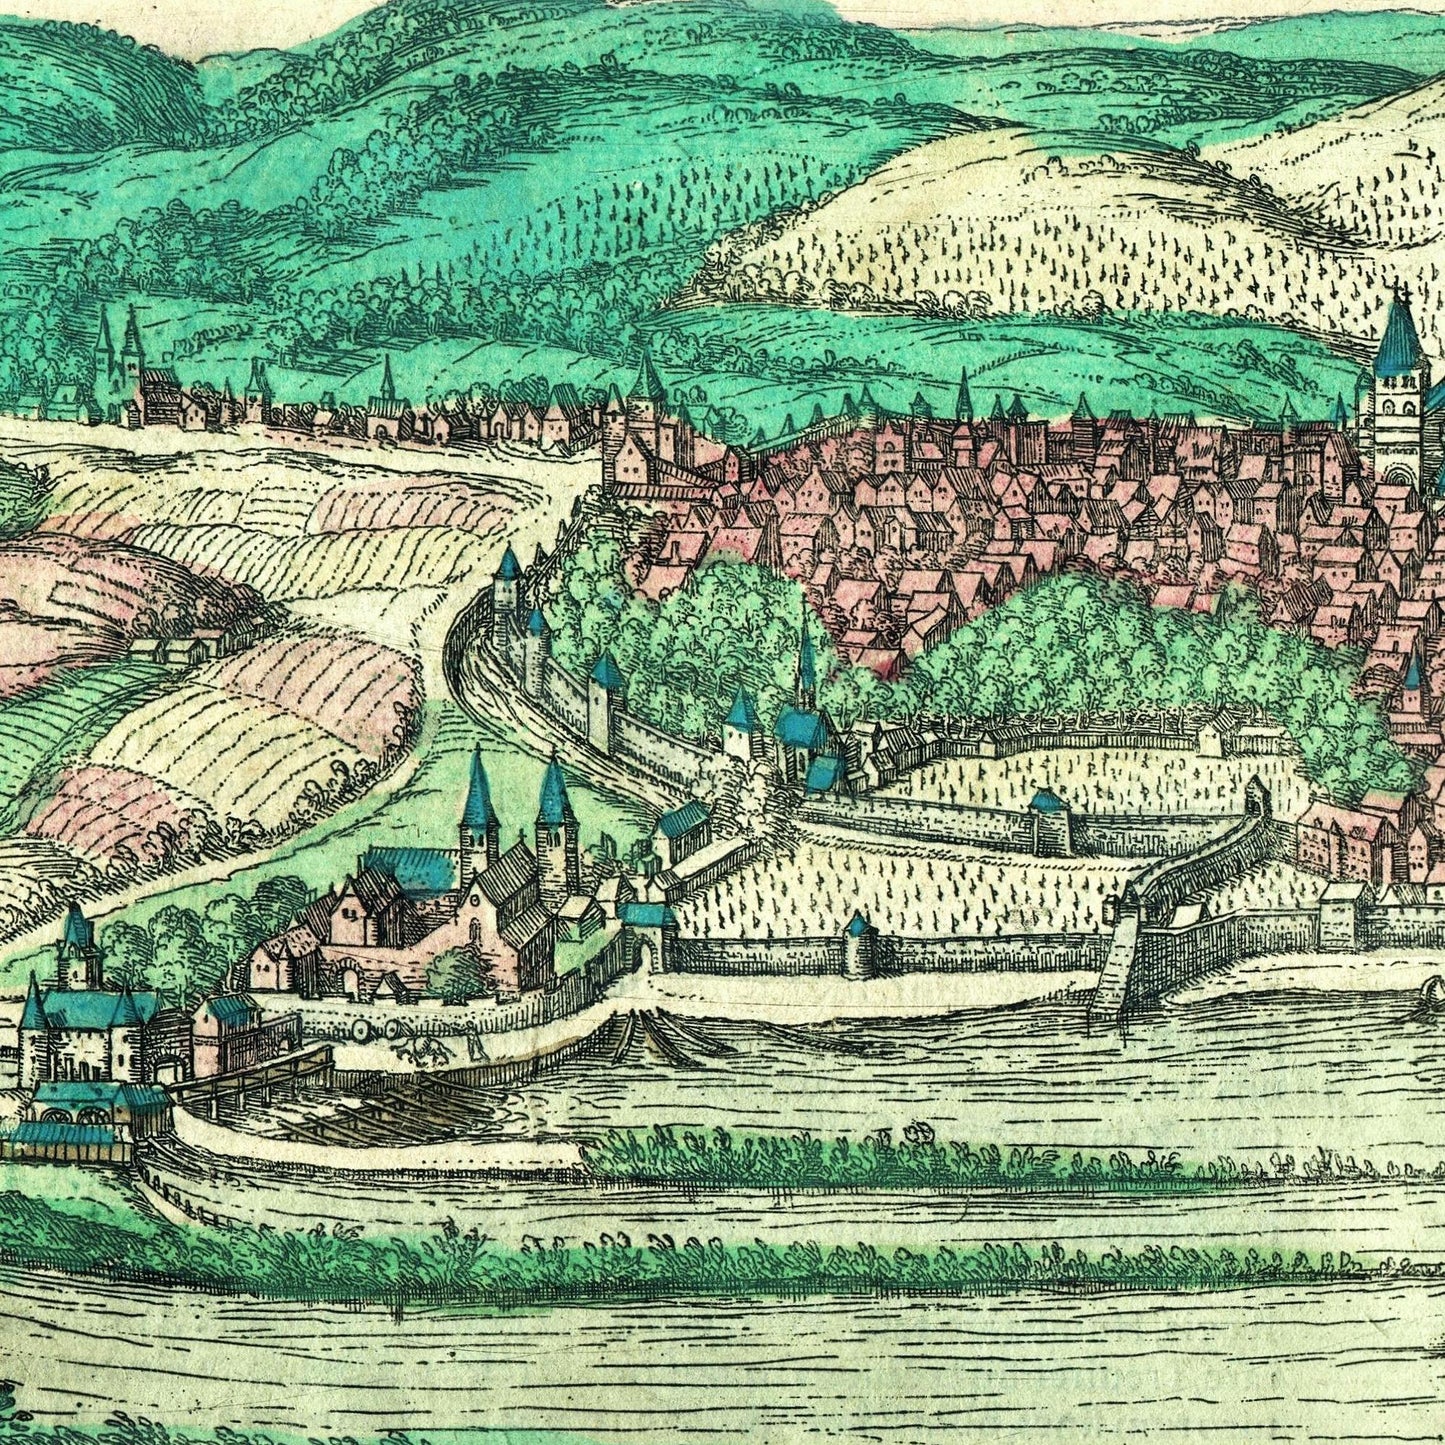 Historische Stadtansicht Trier um 1572